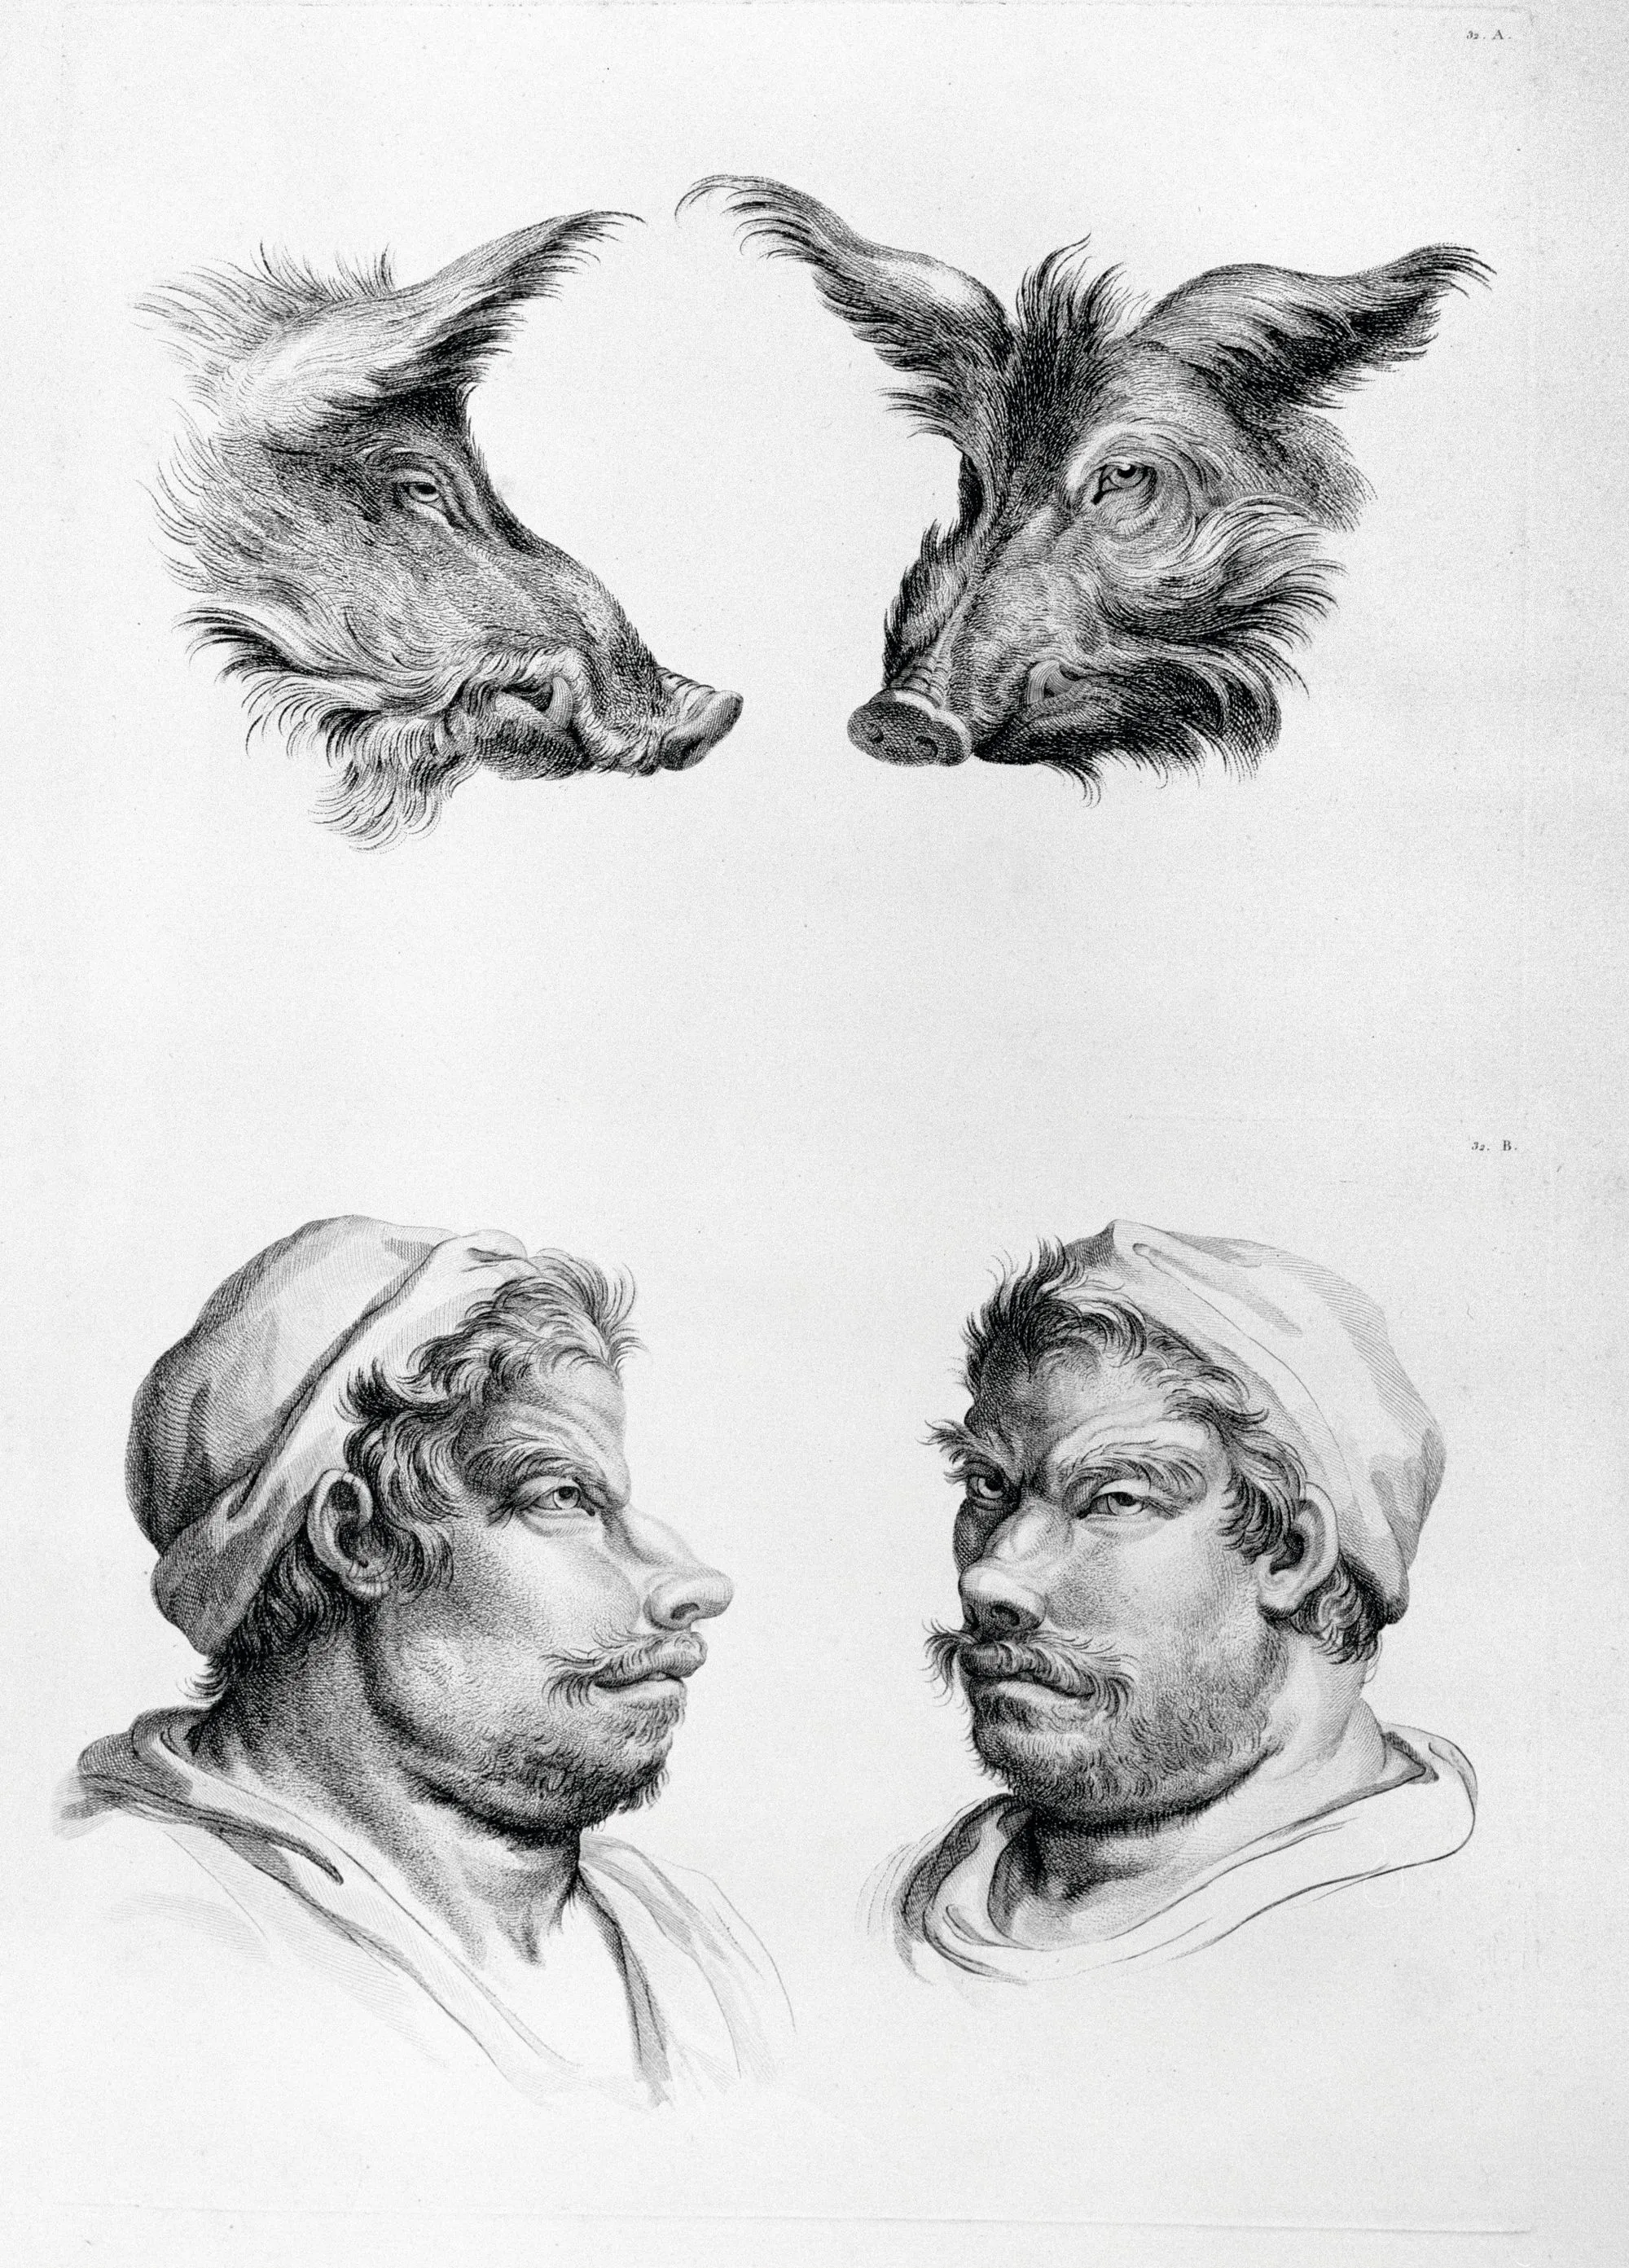 Charles Le Brun (d'après), « Rapport de la figure humaine avec celle du sanglier », Traité du rapport de la figure humaine avec celle des animaux, 1672.